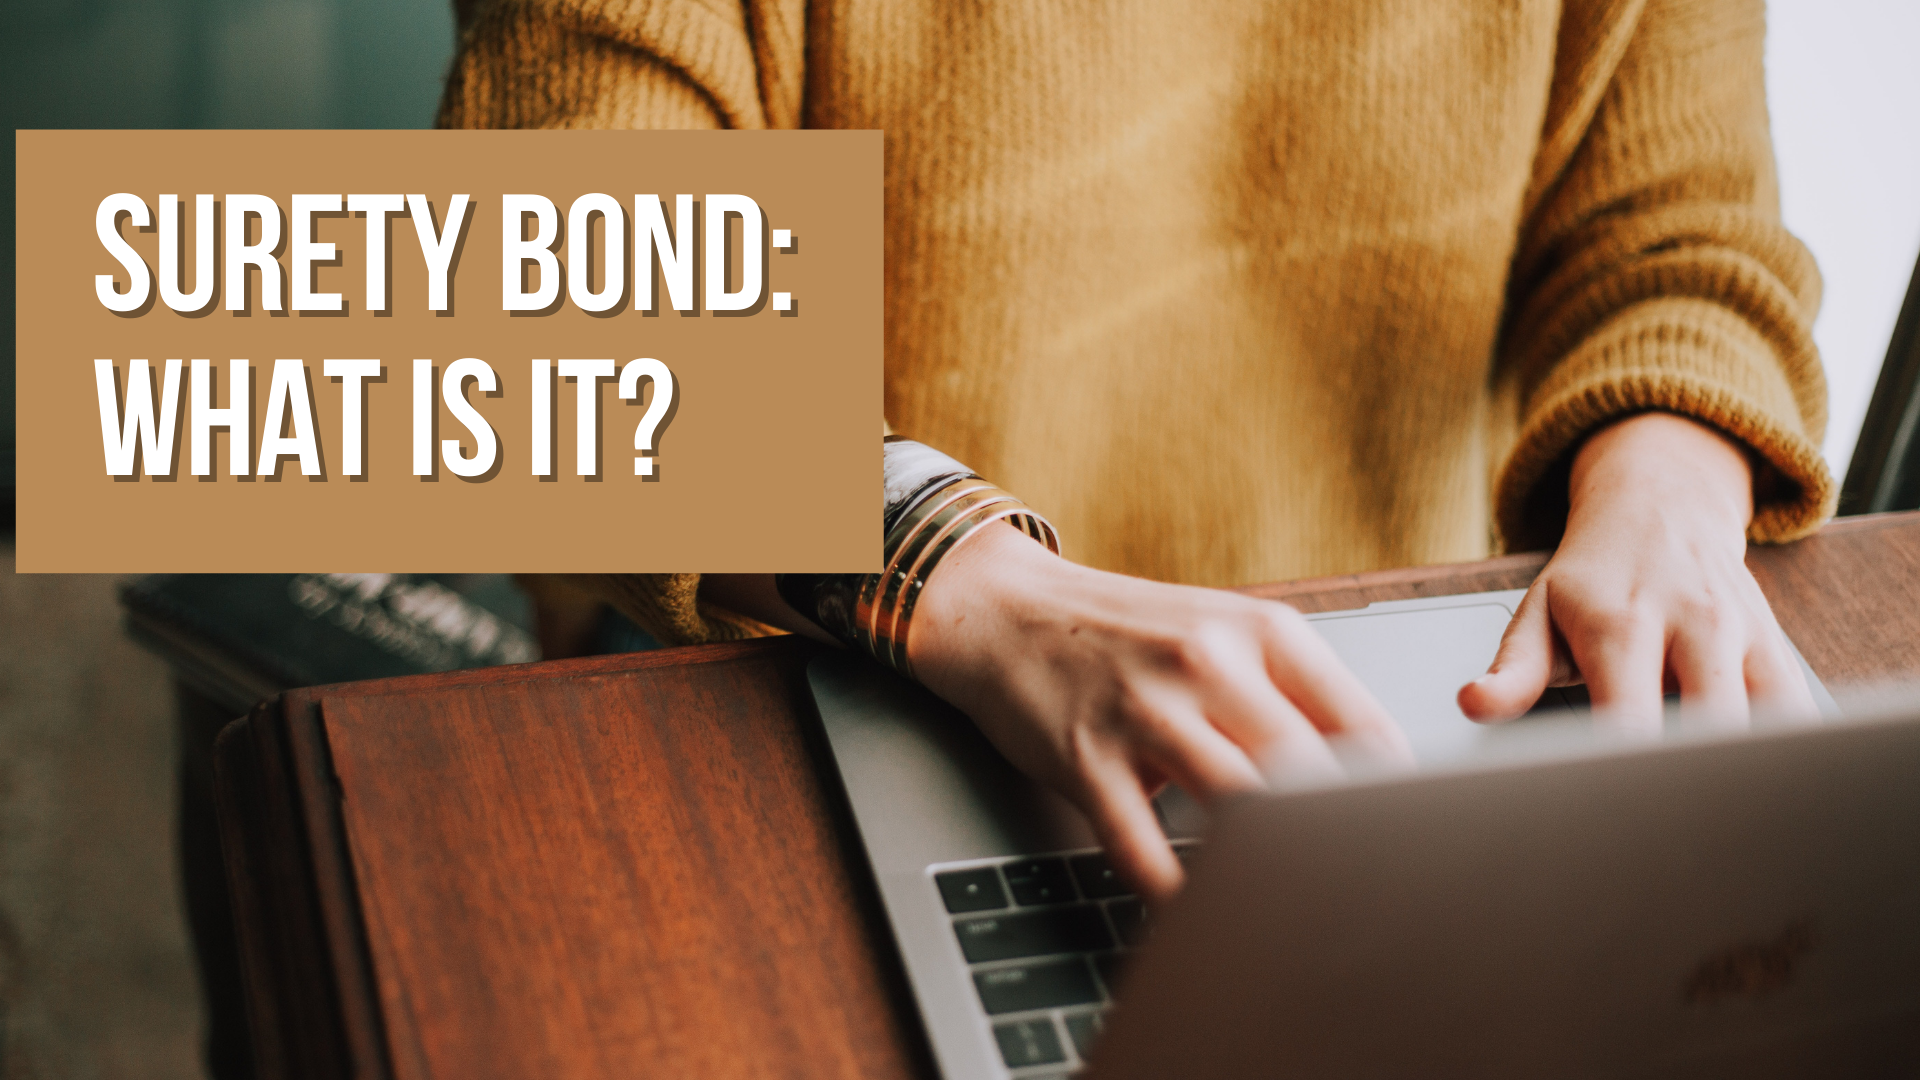 Surety Bond: What is it?